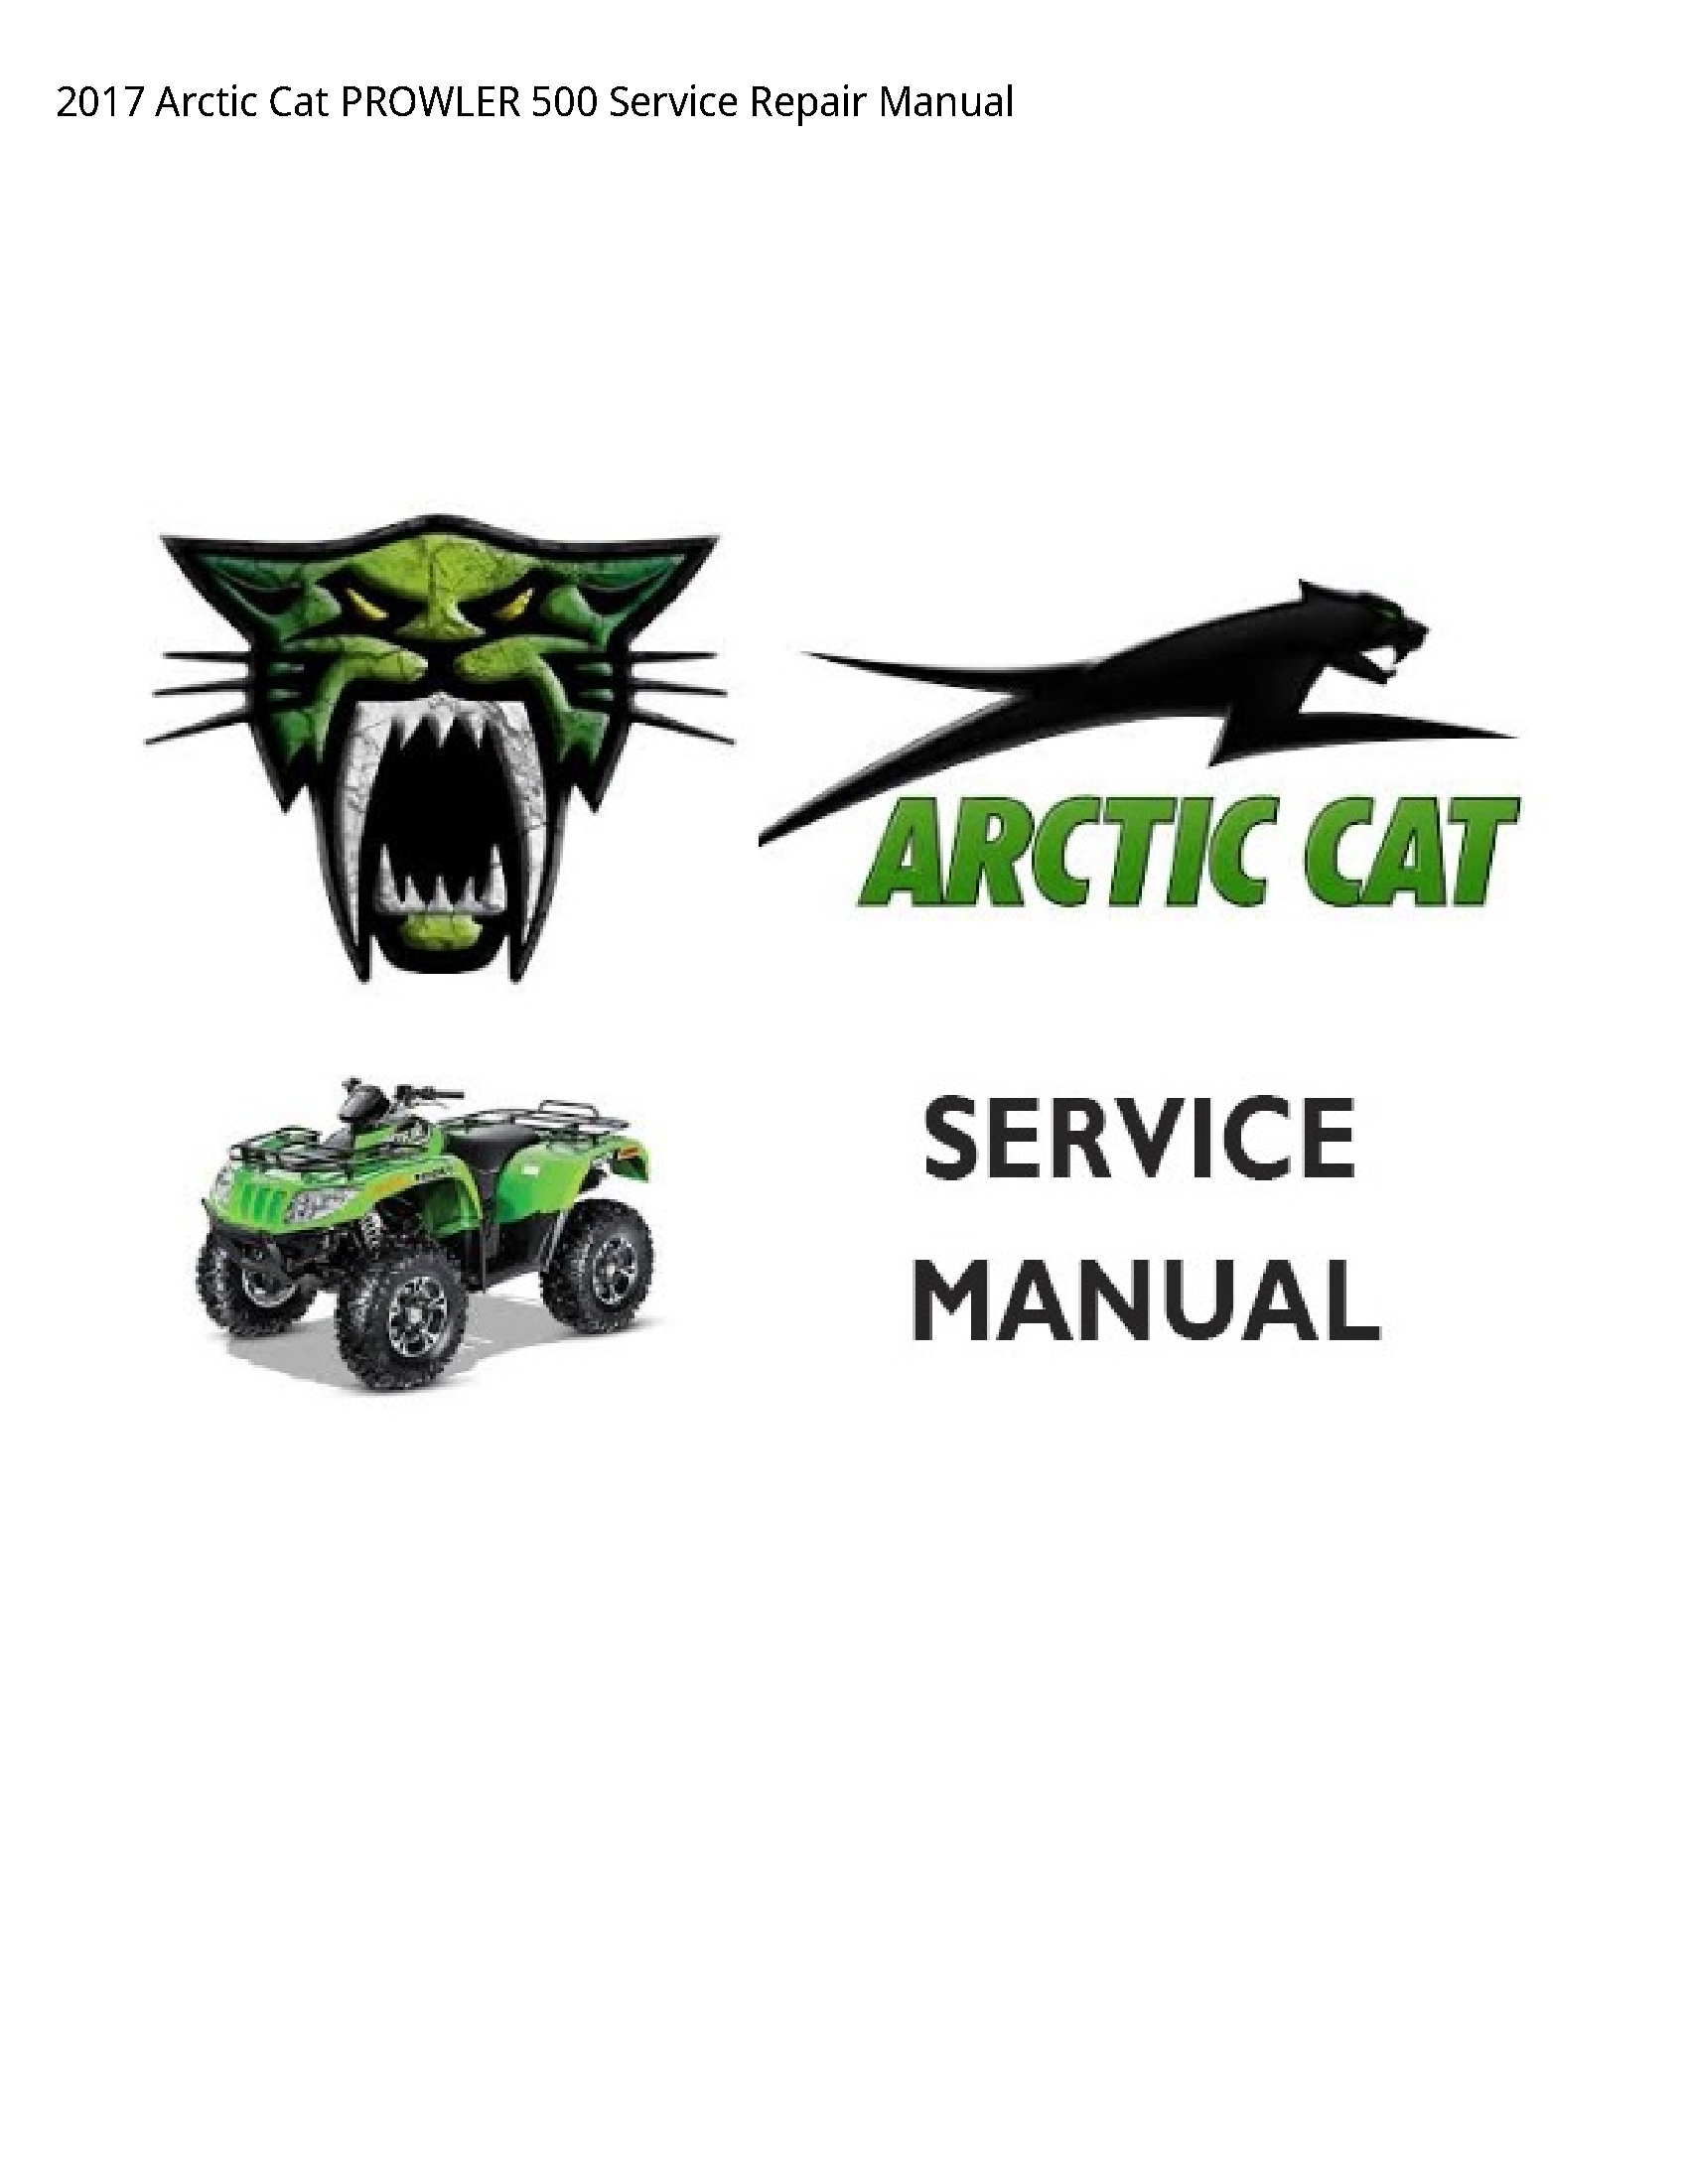 Arctic Cat 500 PROWLER manual